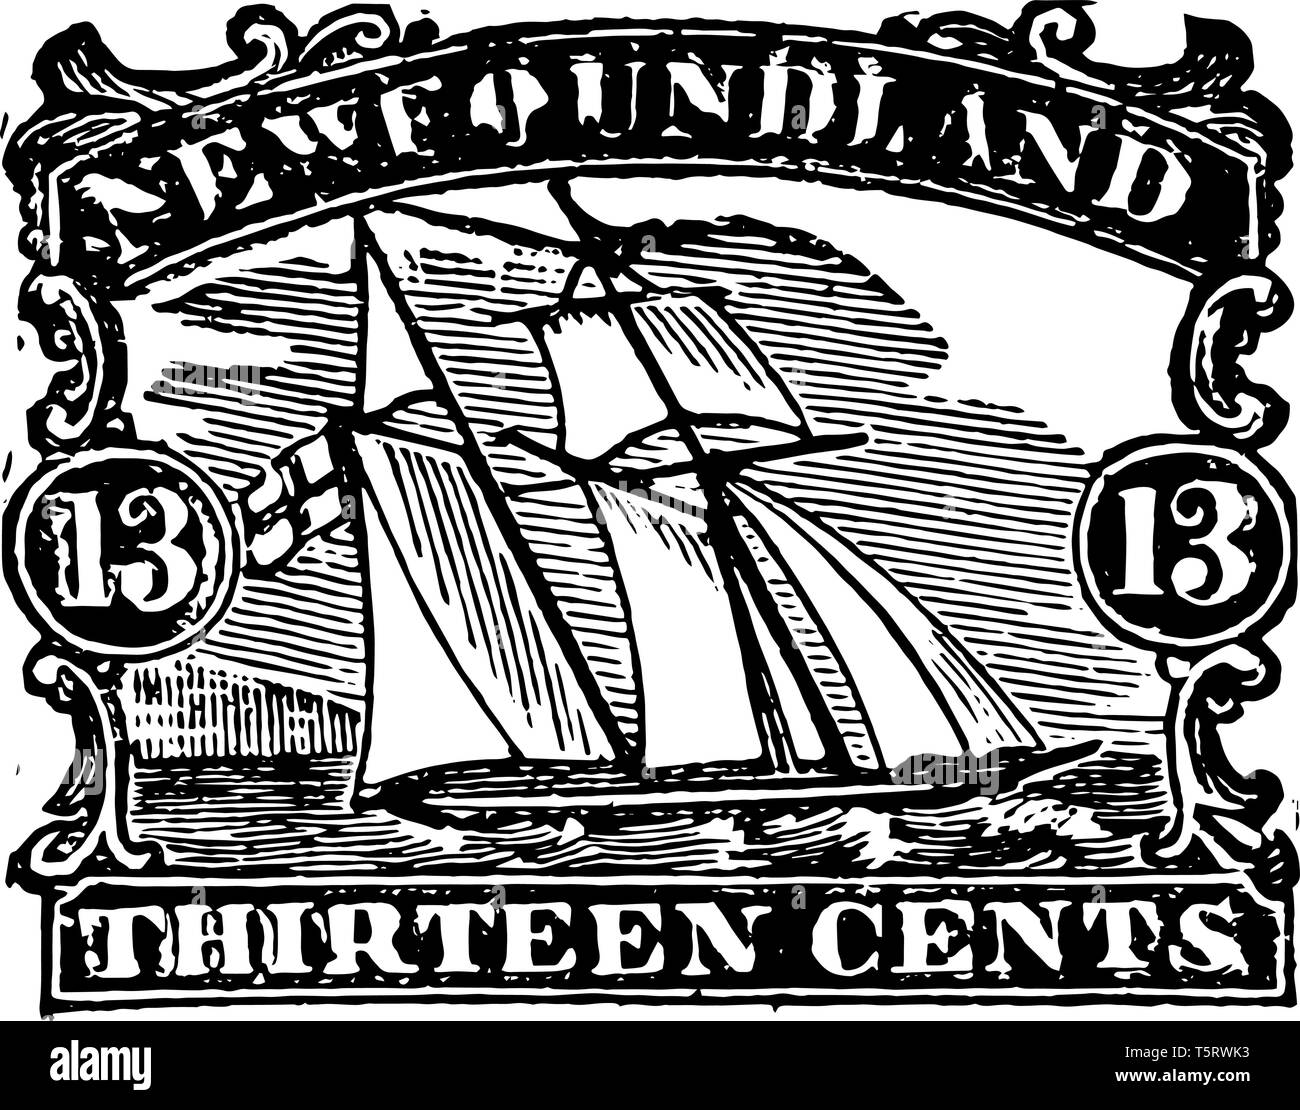 Foundland Nuovo timbro che mostra le navi in mare linea vintage disegno. Illustrazione Vettoriale